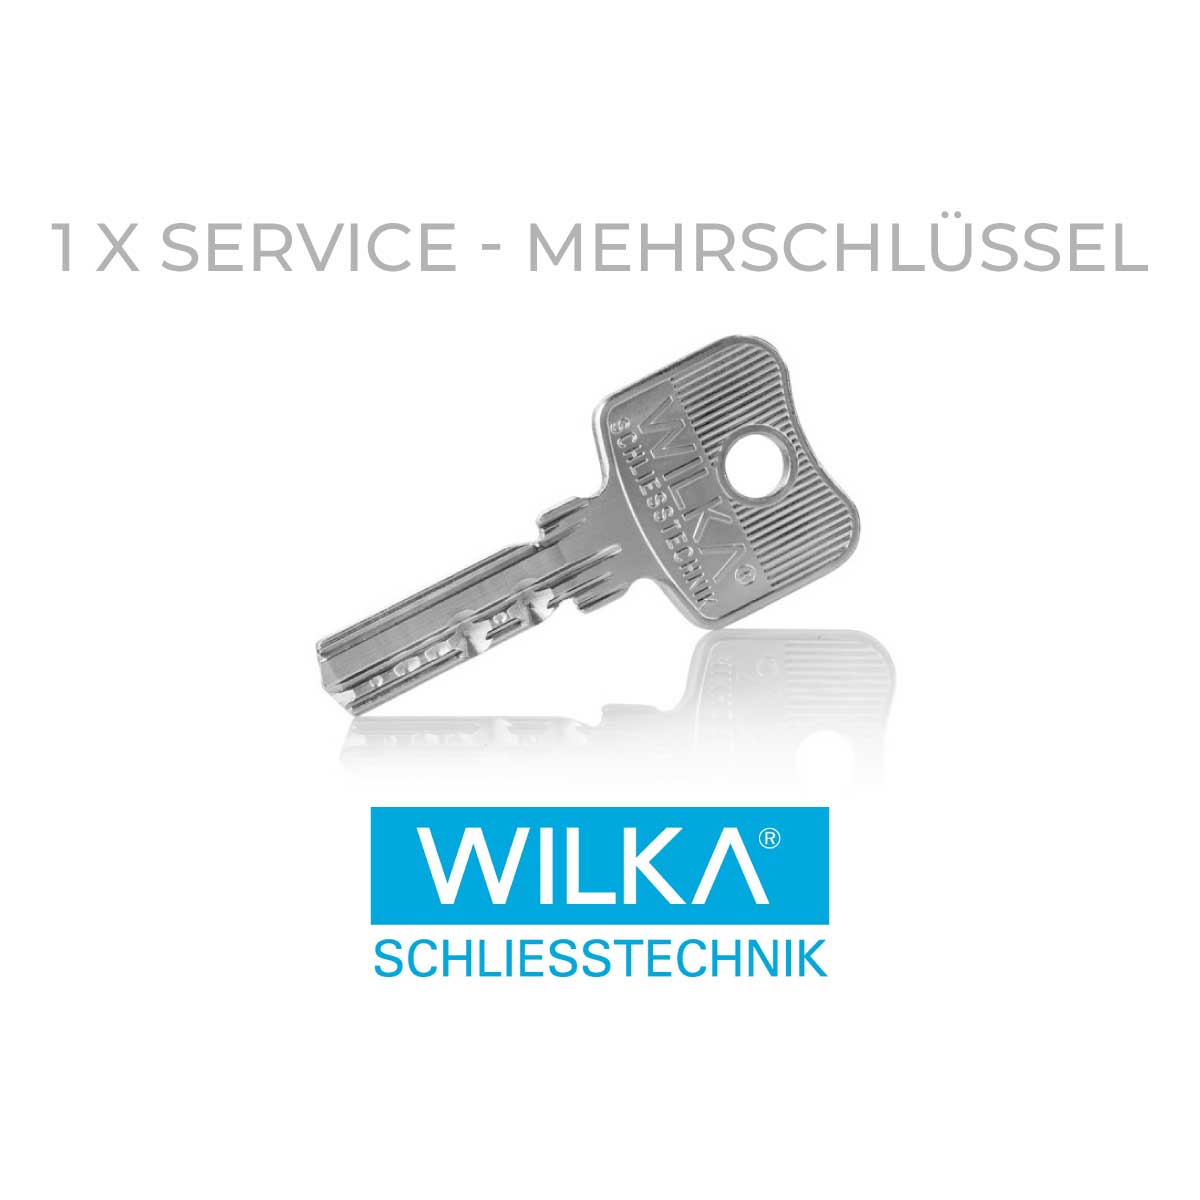 Service - Mehrschlüssel WILKA 3610 und 3663